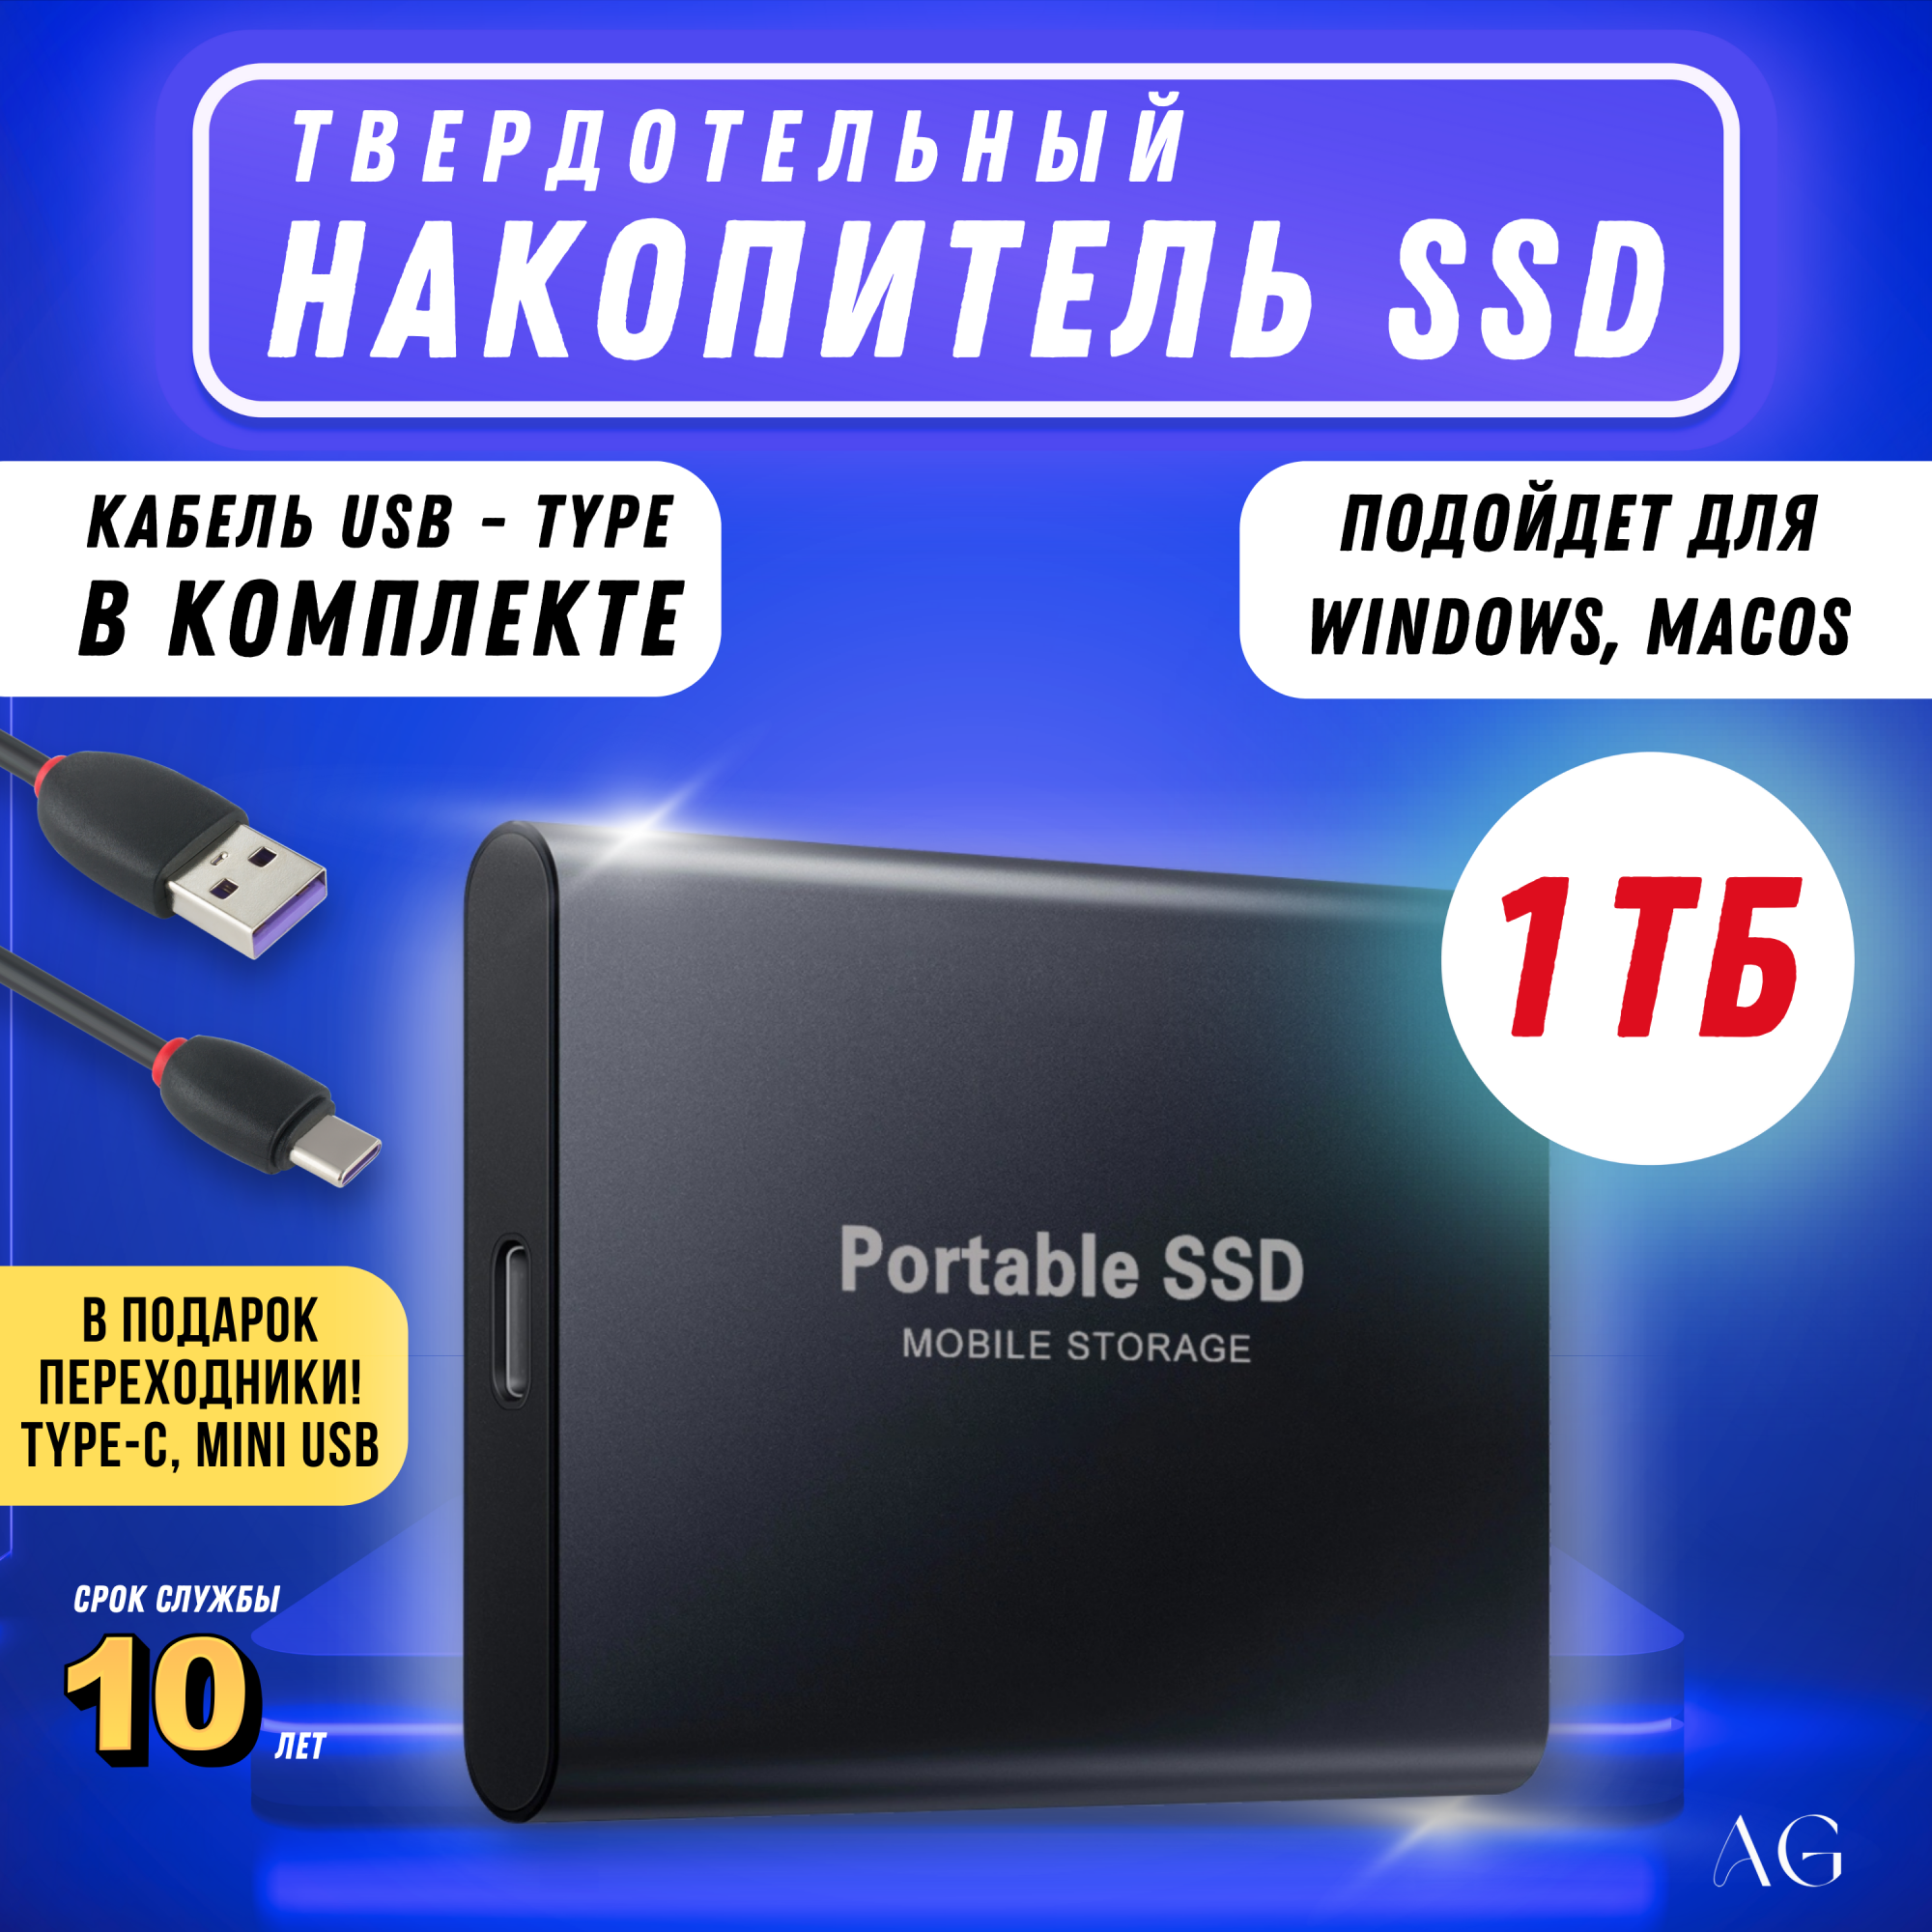 Внешний диск SSD AG Digital, 1TB - купить в Москве, цены в интернет-магазинах Мегамаркет